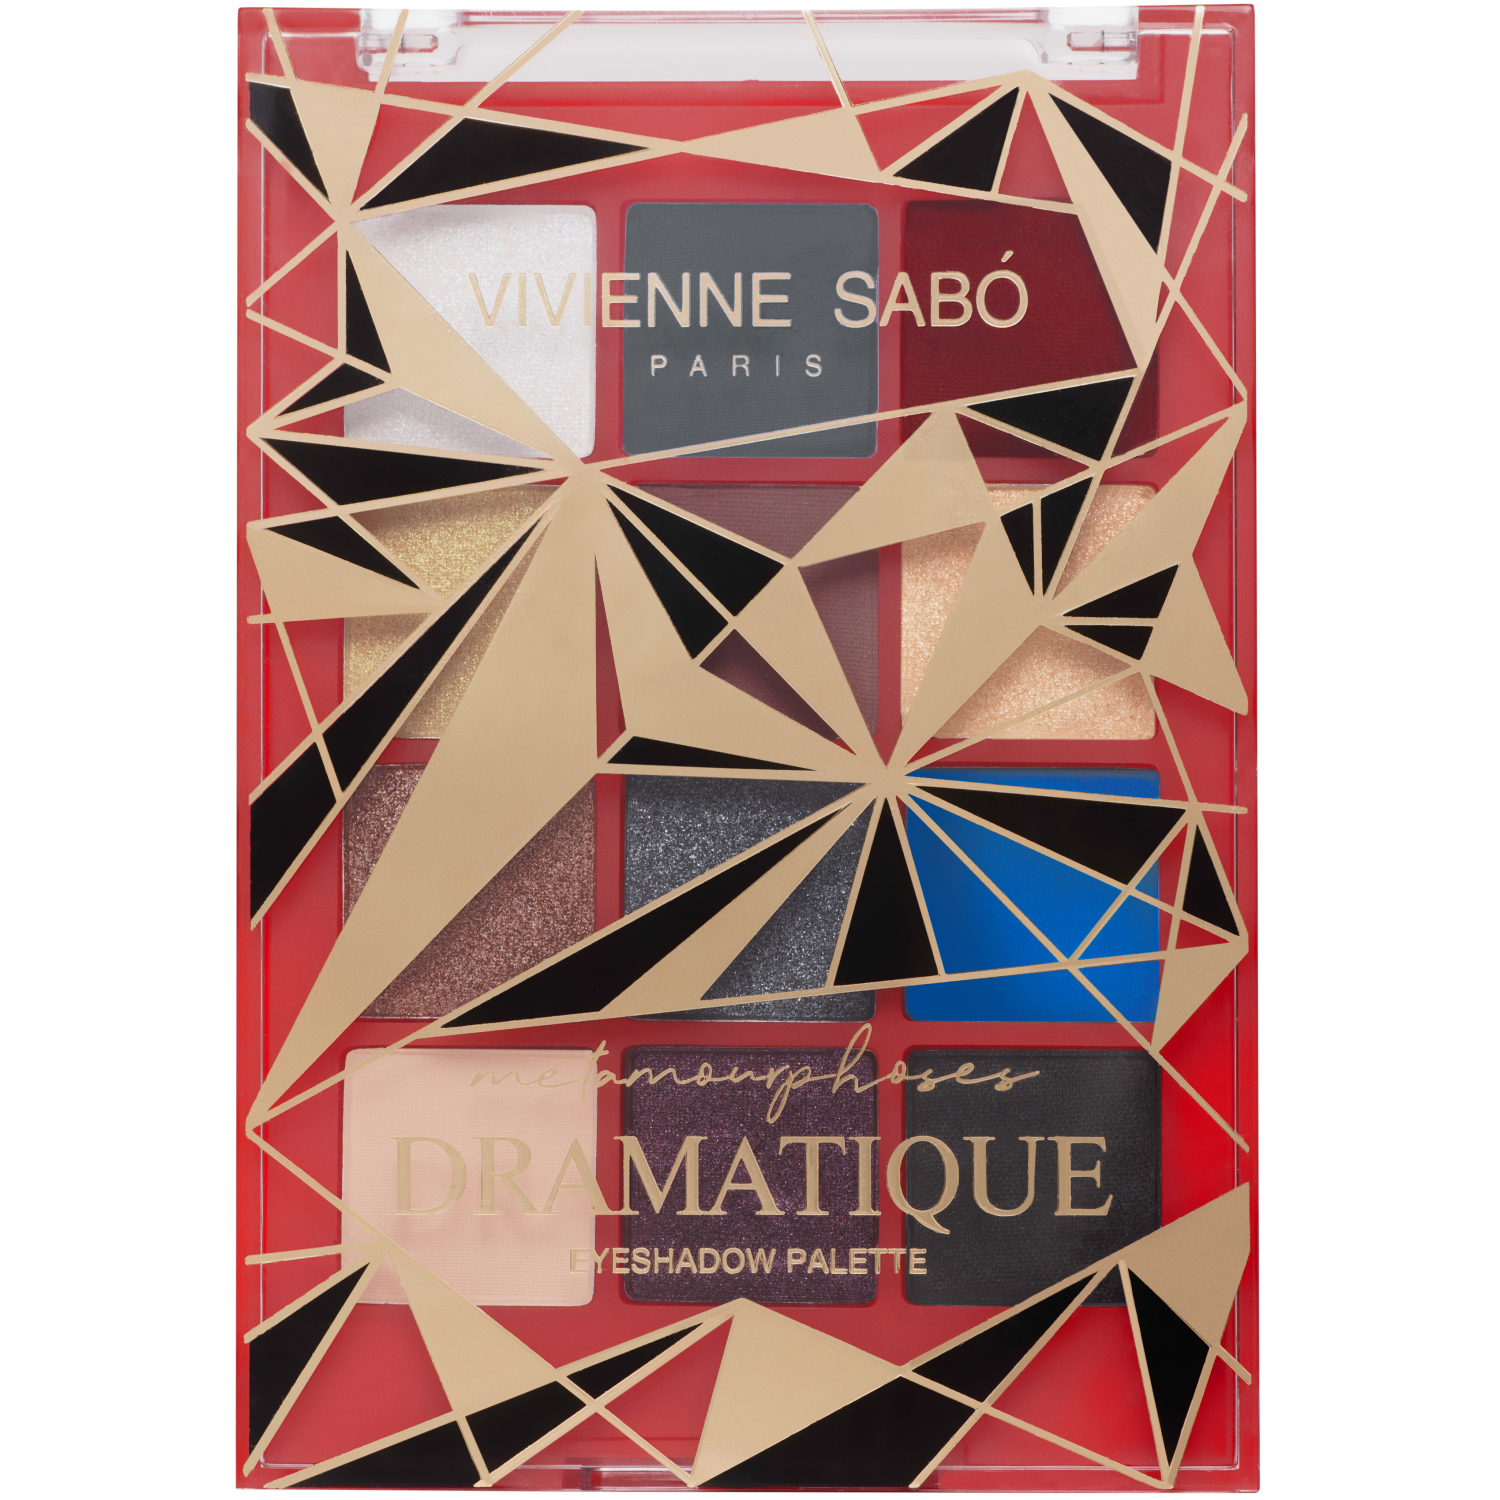 Палетка теней Vivienne Sabo Metamourphoses Dramatique 03 палетка теней для век рыжая